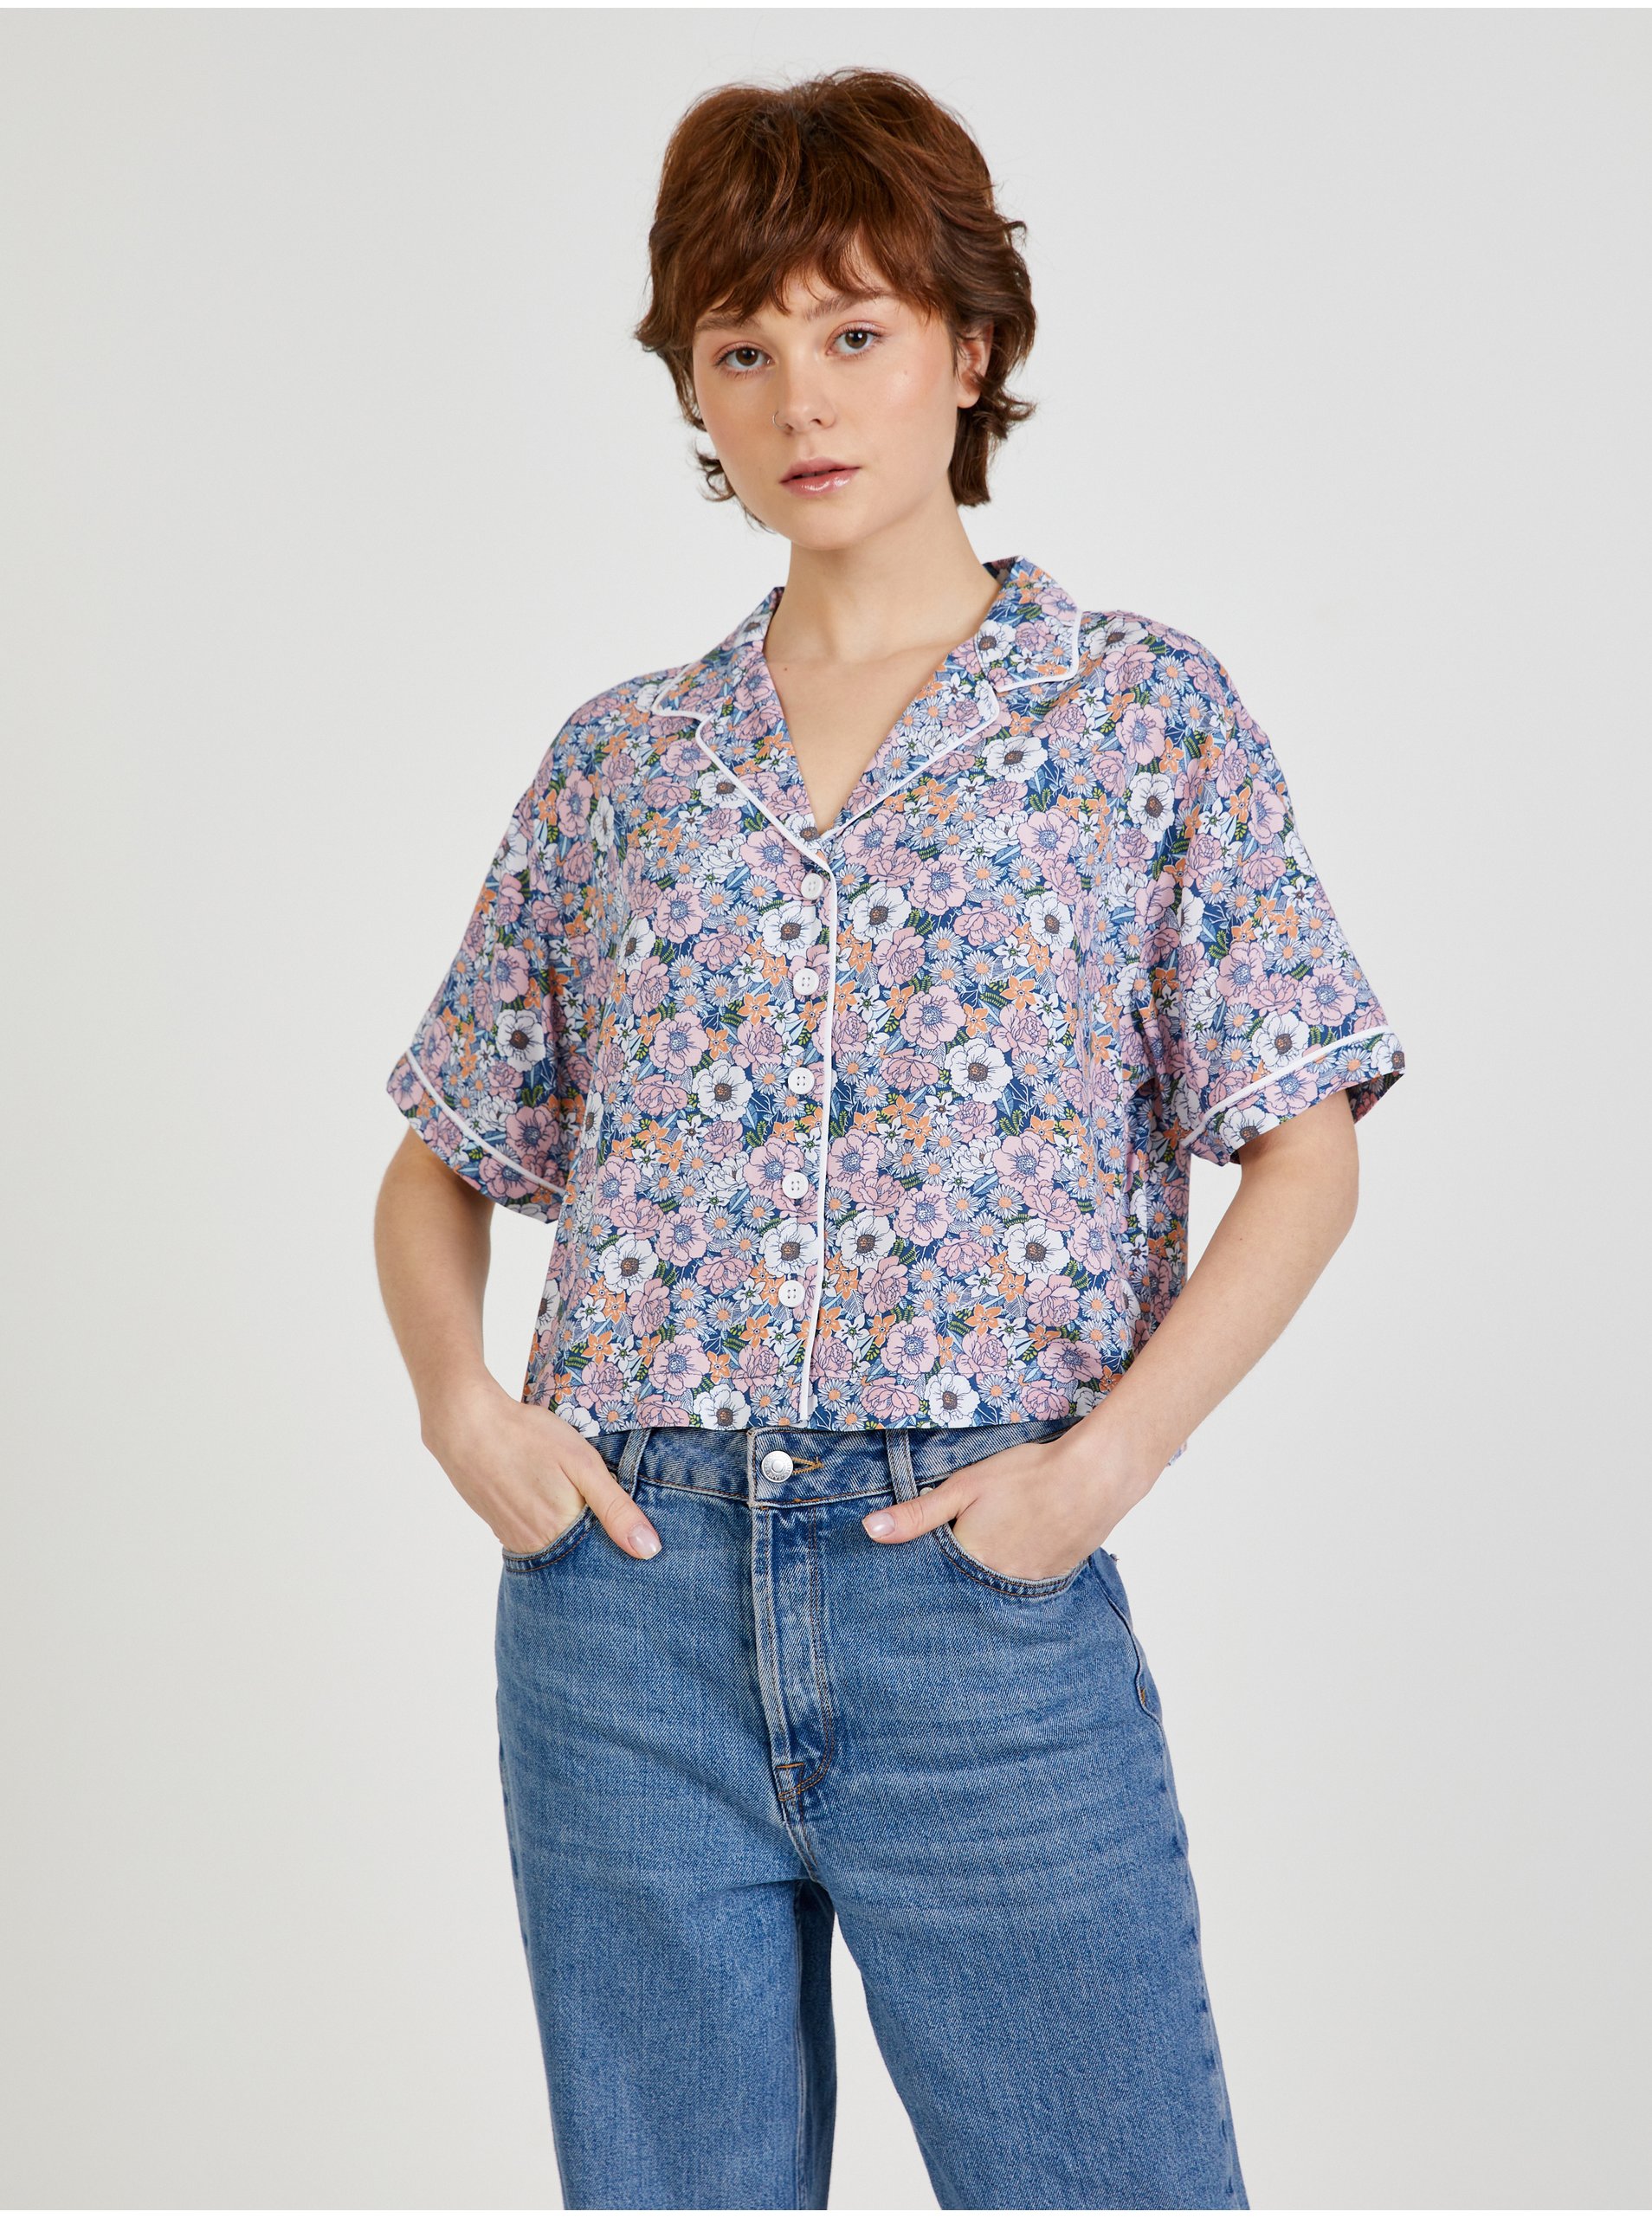 E-shop Modro-růžová dámská vzorovaná košile VANS Retro Floral